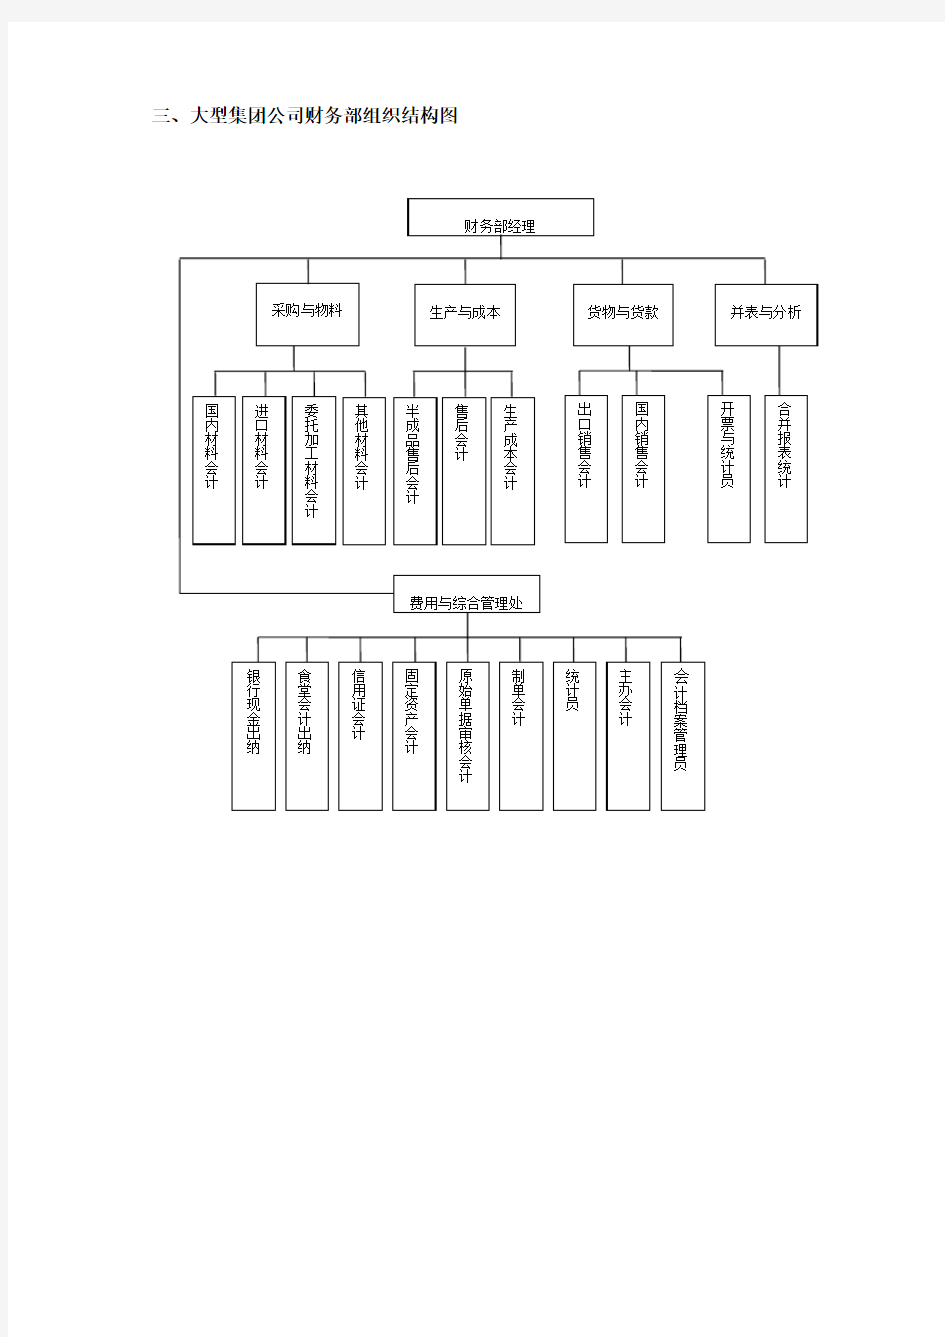 集团财务部门组织架构图